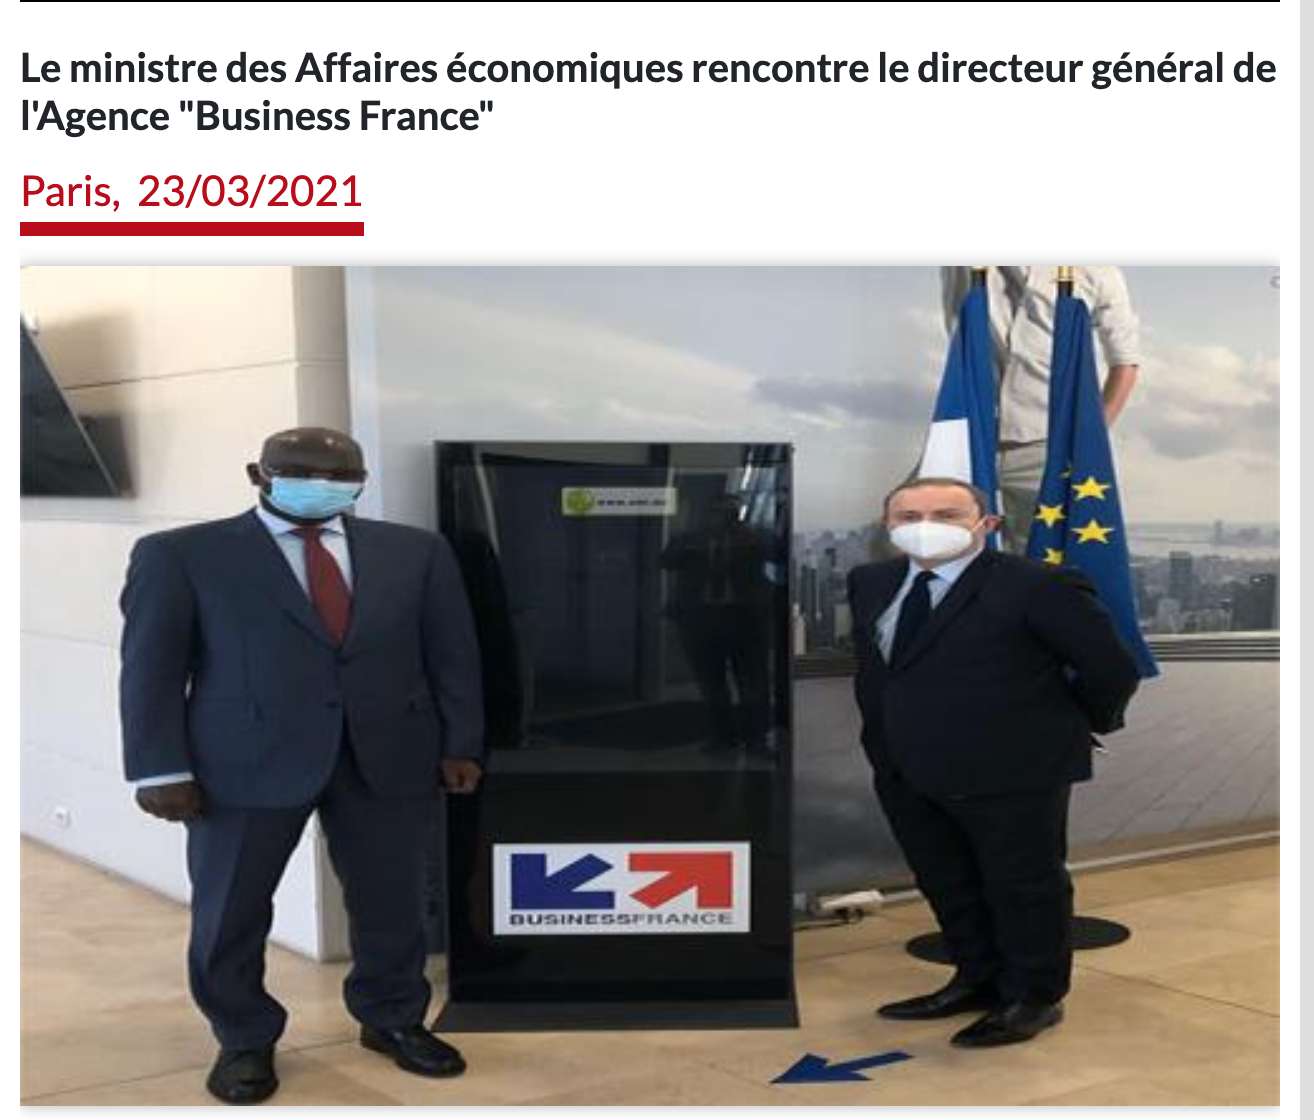 Le ministre des Affaires économiques rencontre le directeur général de l'Agence "Business France"